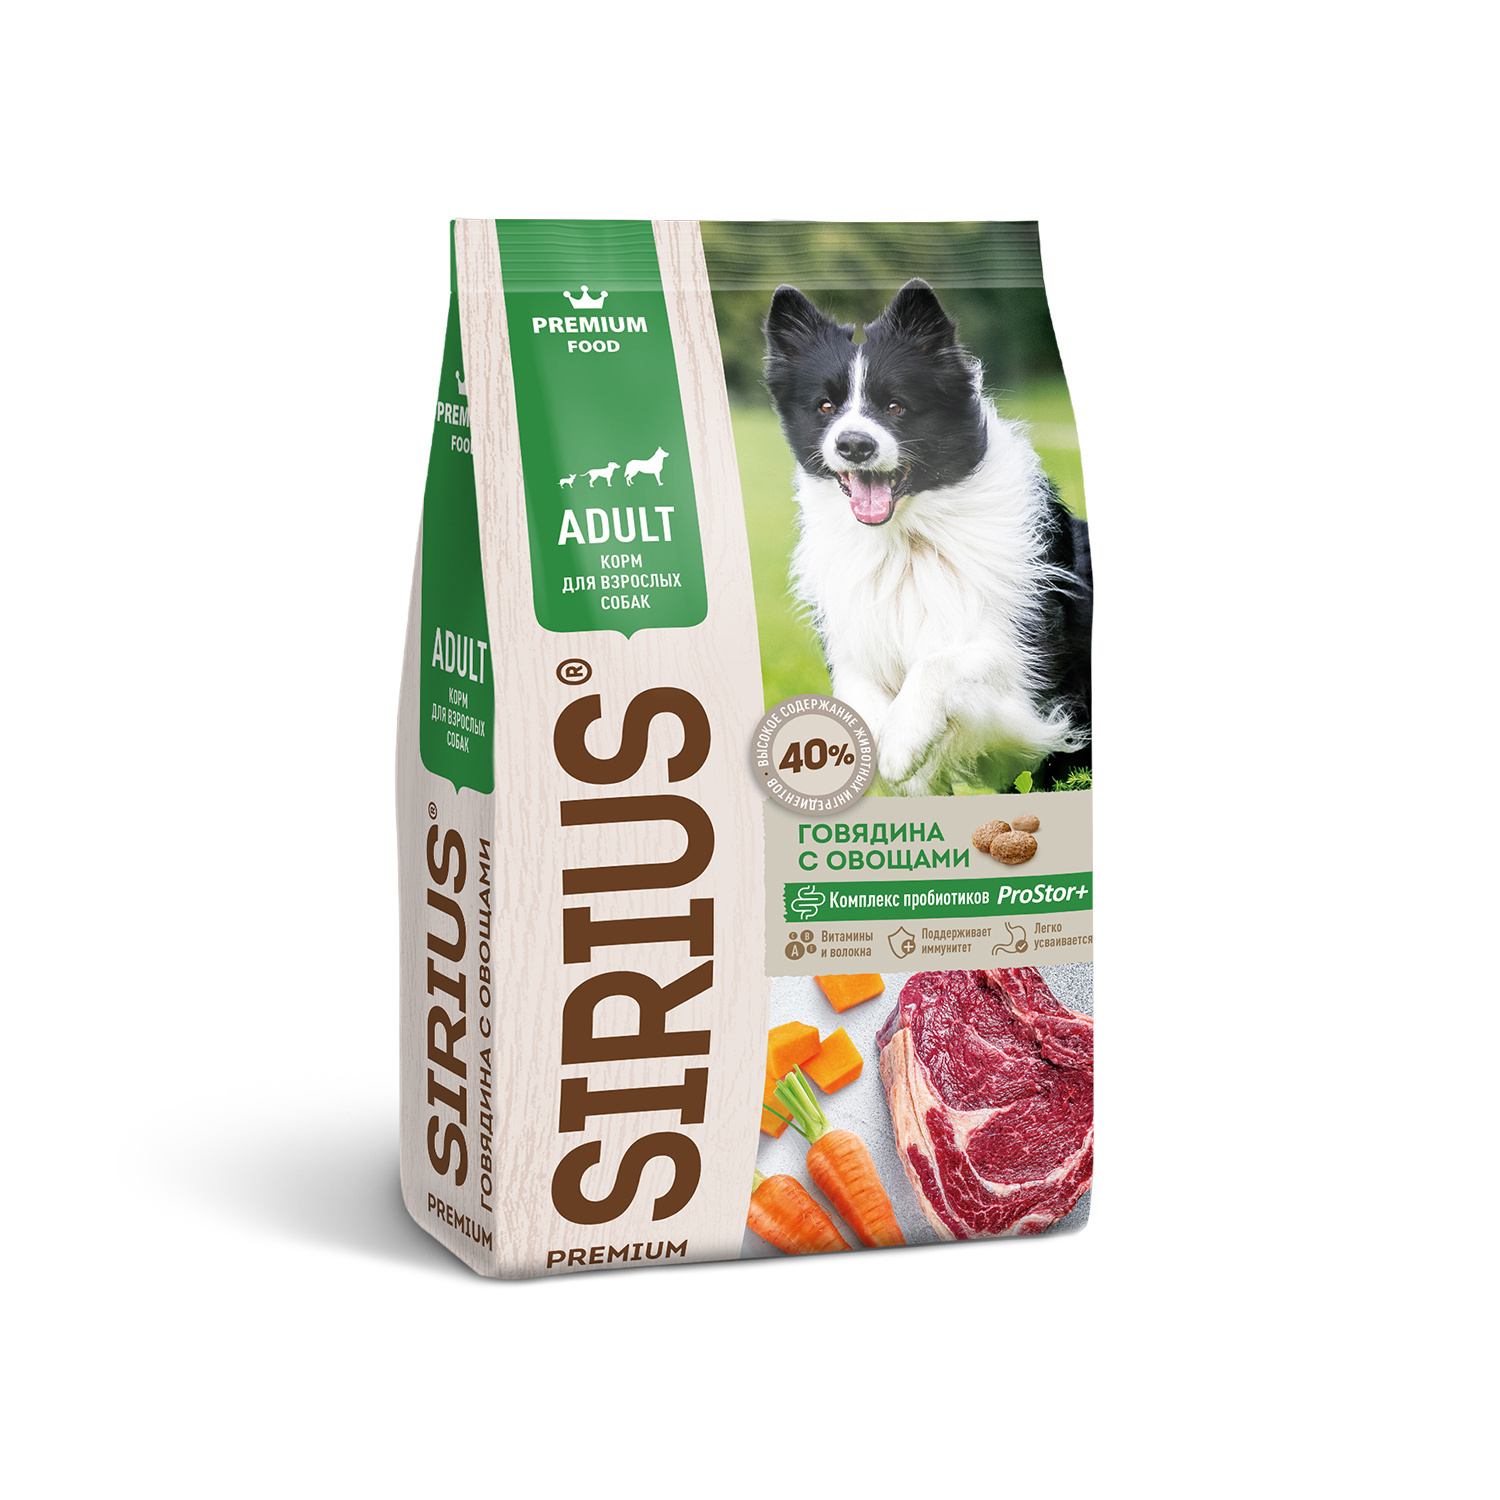 Sirius Sirius сухой корм для собак, говядина с овощами (15 кг) sirius sirius сухой корм для собак говядина с овощами 15 кг